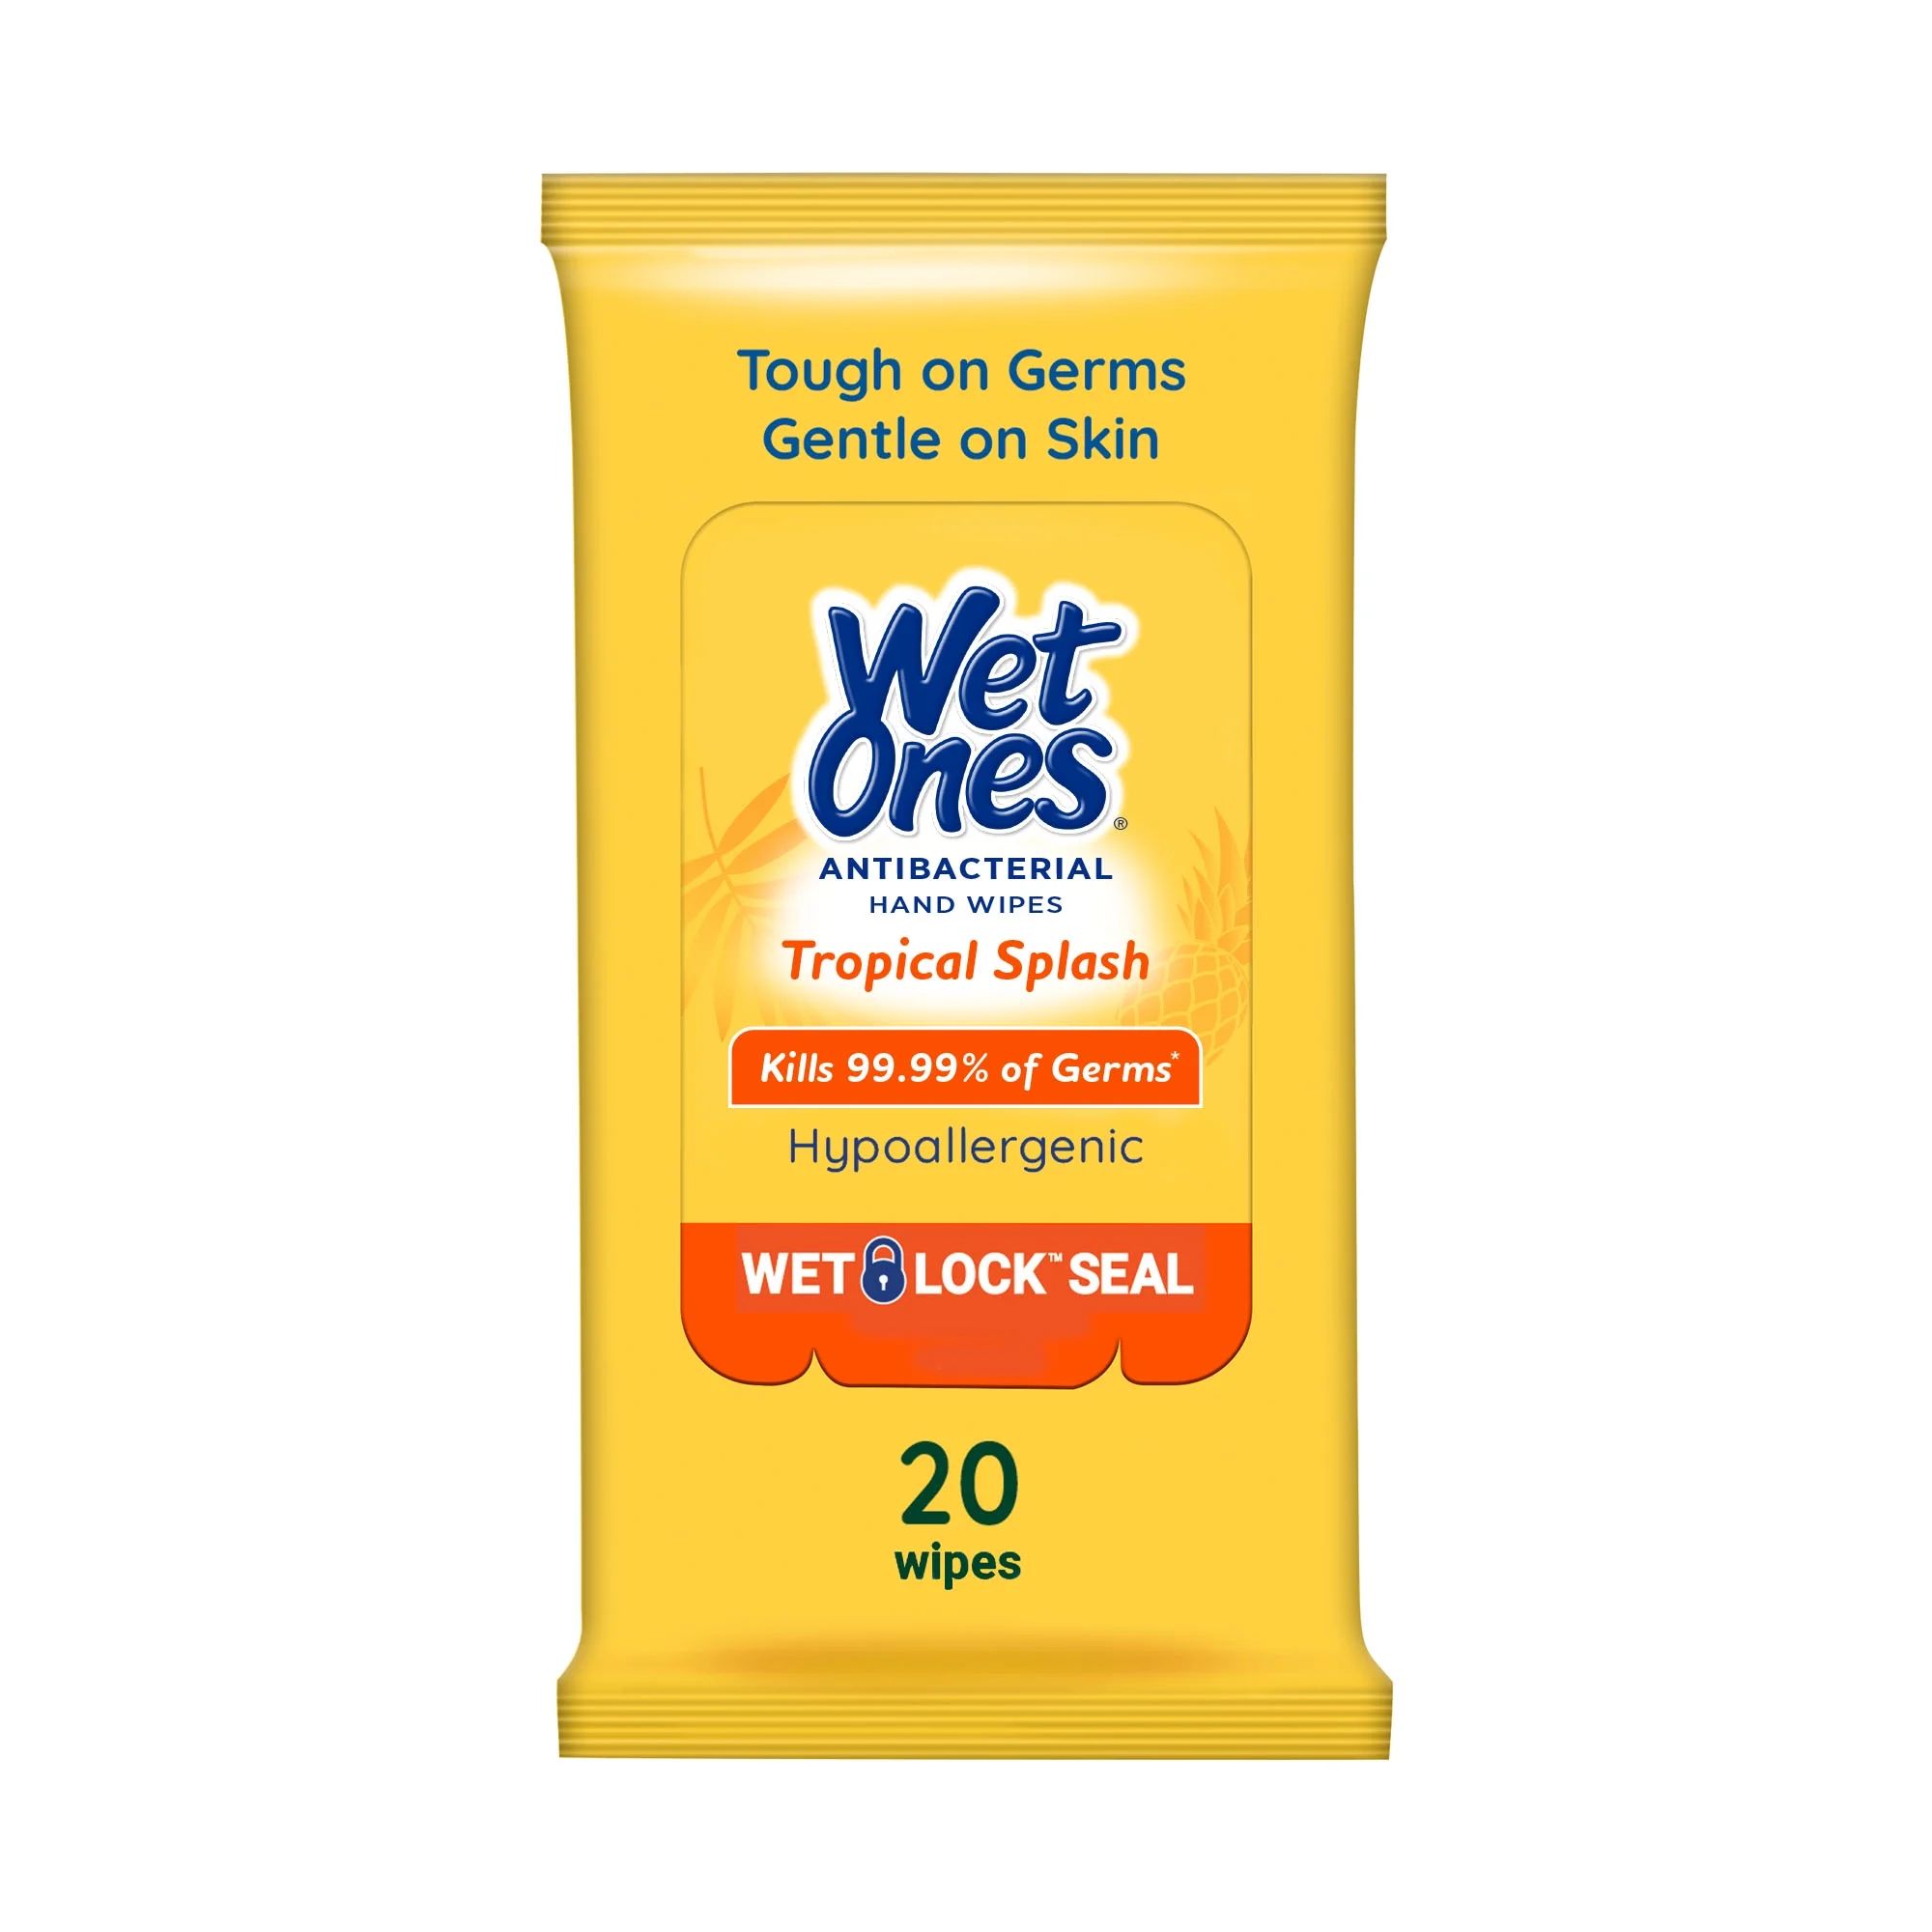 Wet Ones Antibacterial Tropical Splash Scent Hand Wipes 20 Ct Travel Pack, Hypoallergenic, Kills ... | Walmart (US)